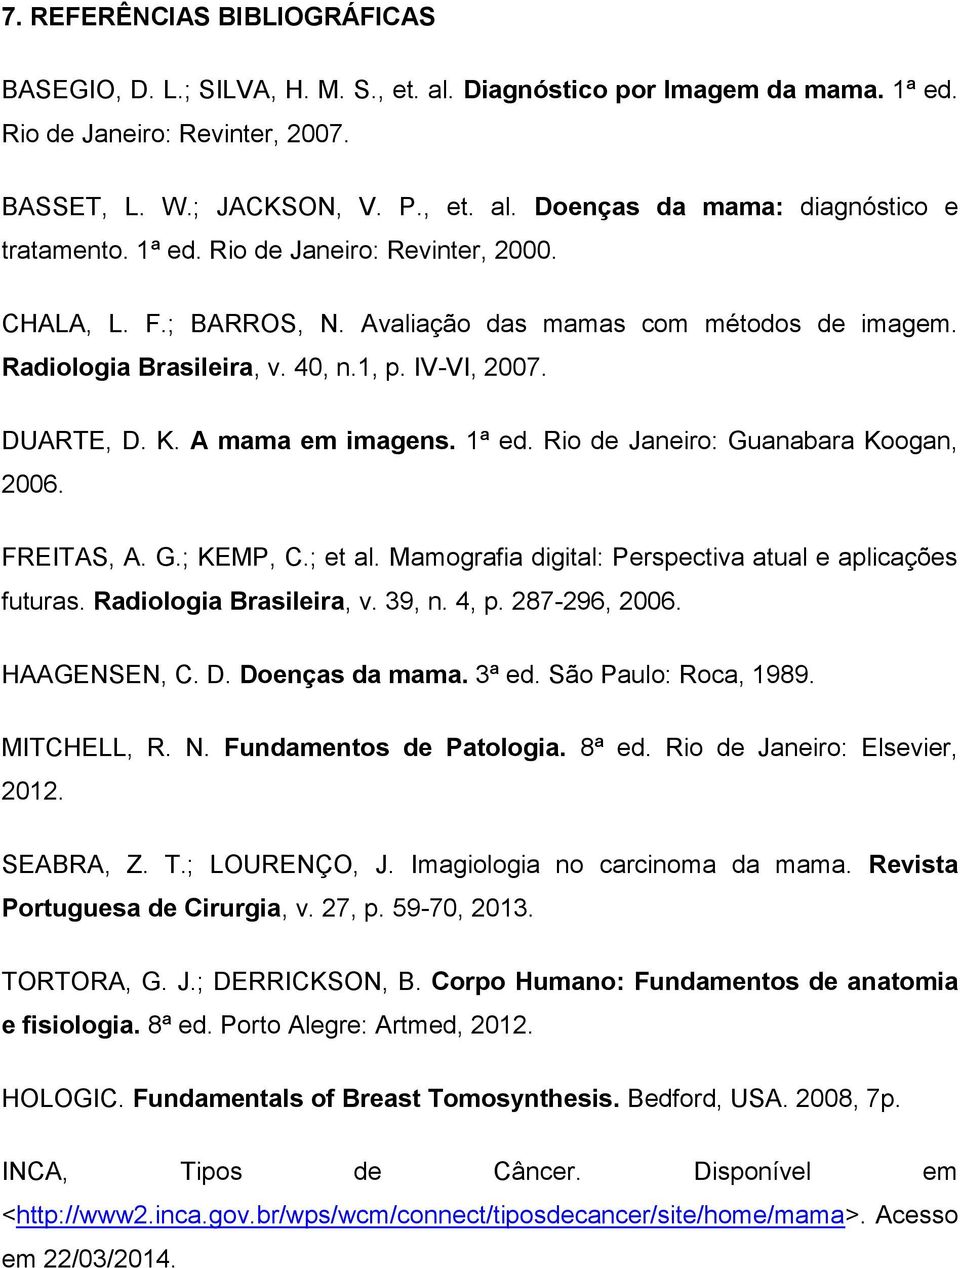 Rio de Janeiro: Guanabara Koogan, 2006. FREITAS, A. G.; KEMP, C.; et al. Mamografia digital: Perspectiva atual e aplicações futuras. Radiologia Brasileira, v. 39, n. 4, p. 287-296, 2006. HAAGENSEN, C.